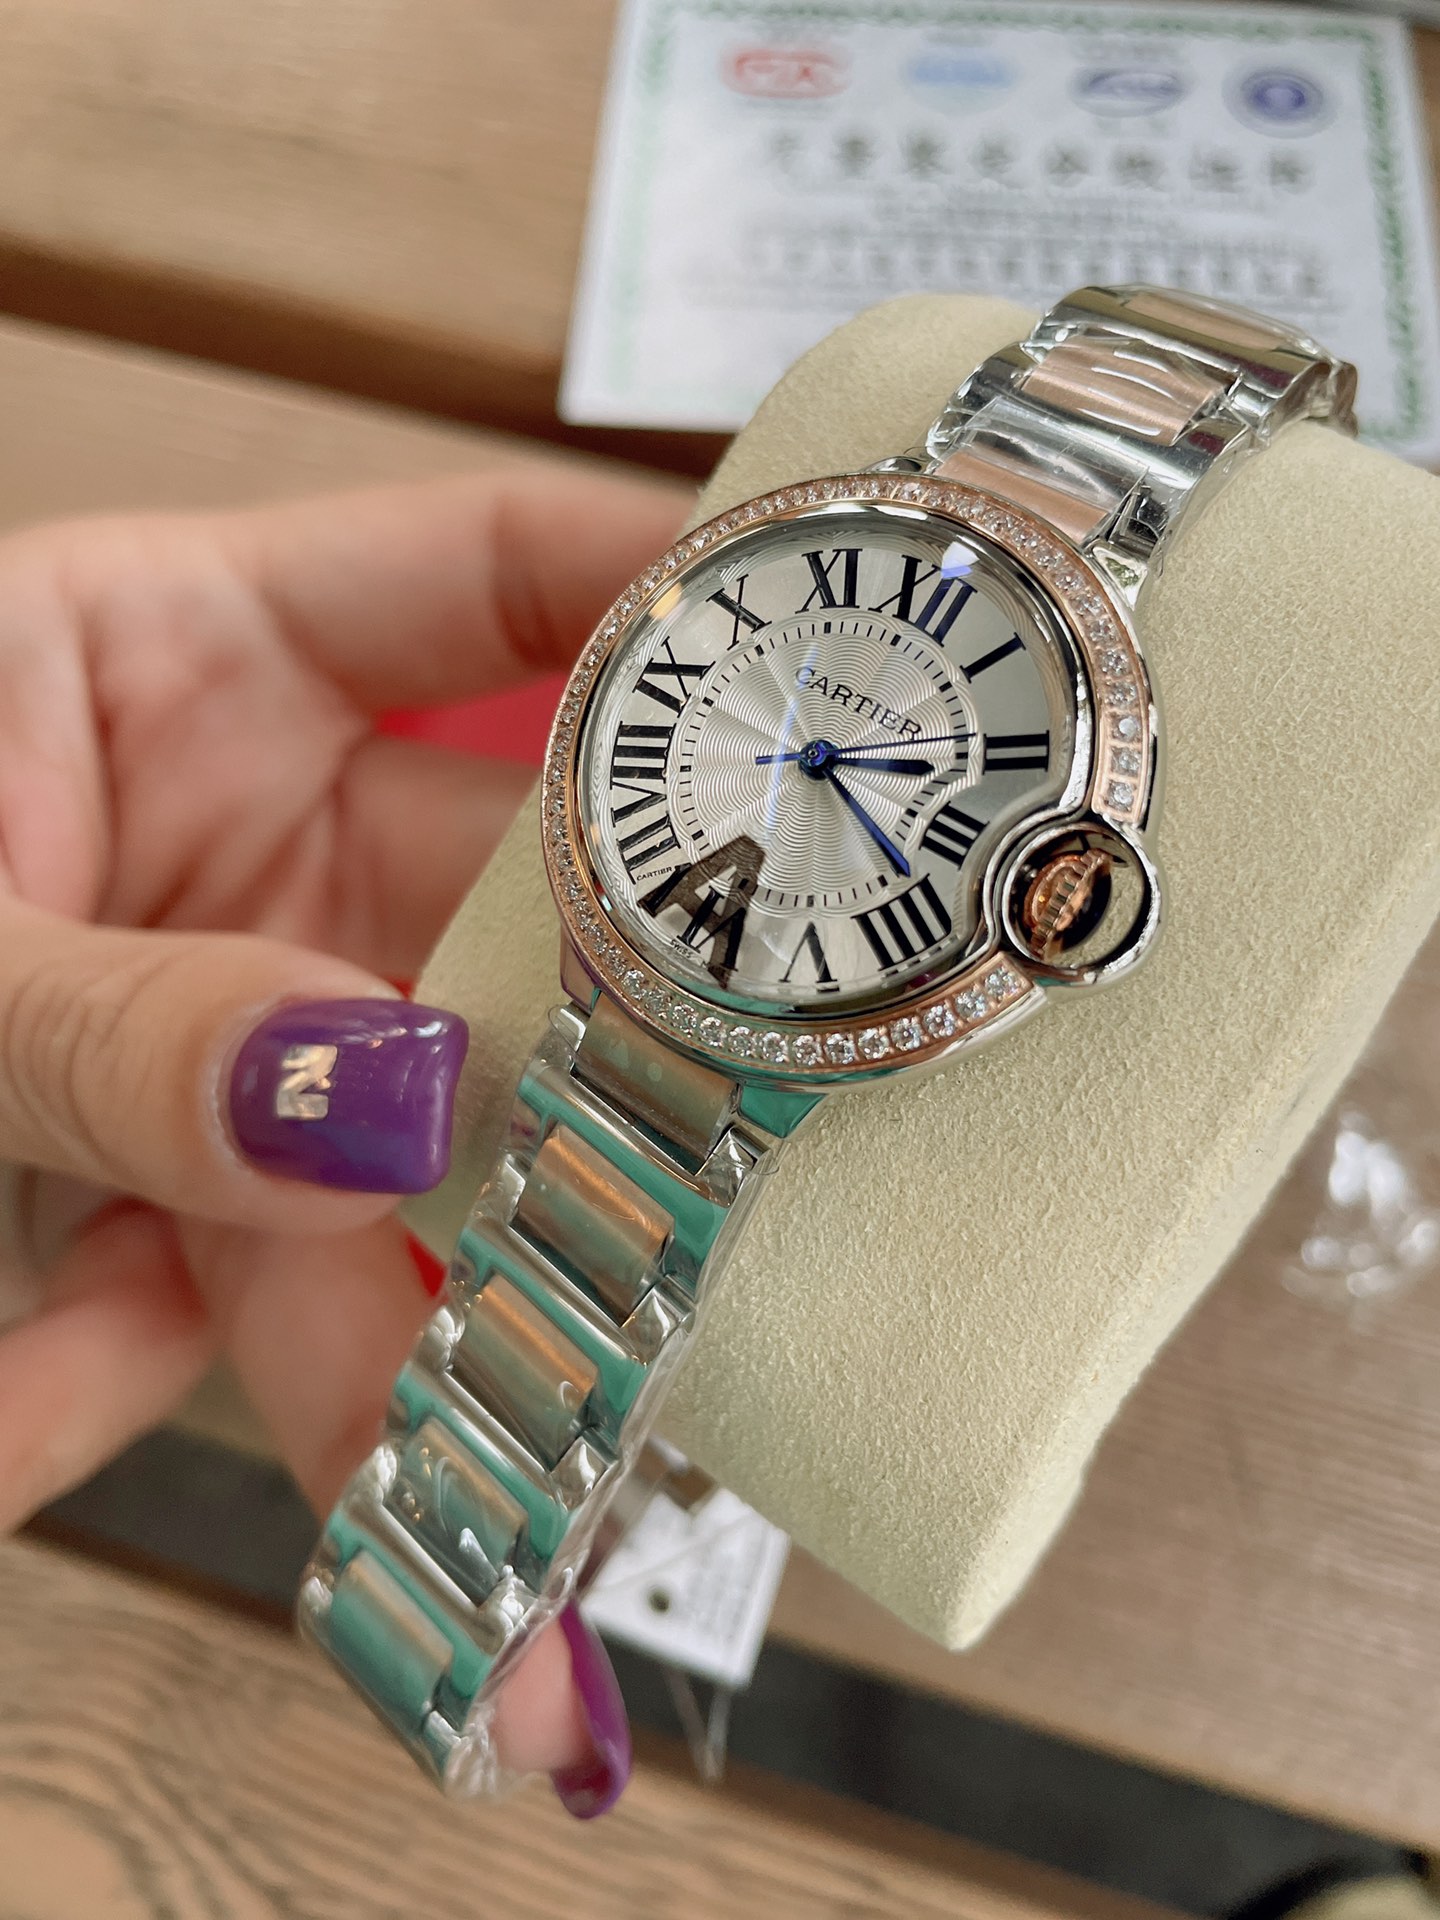 「ダイヤモンドなし」CARTIERカルティエ 時計 中身コピー フランス 薄い腕時計 軽量 レディース 最新商品 _5